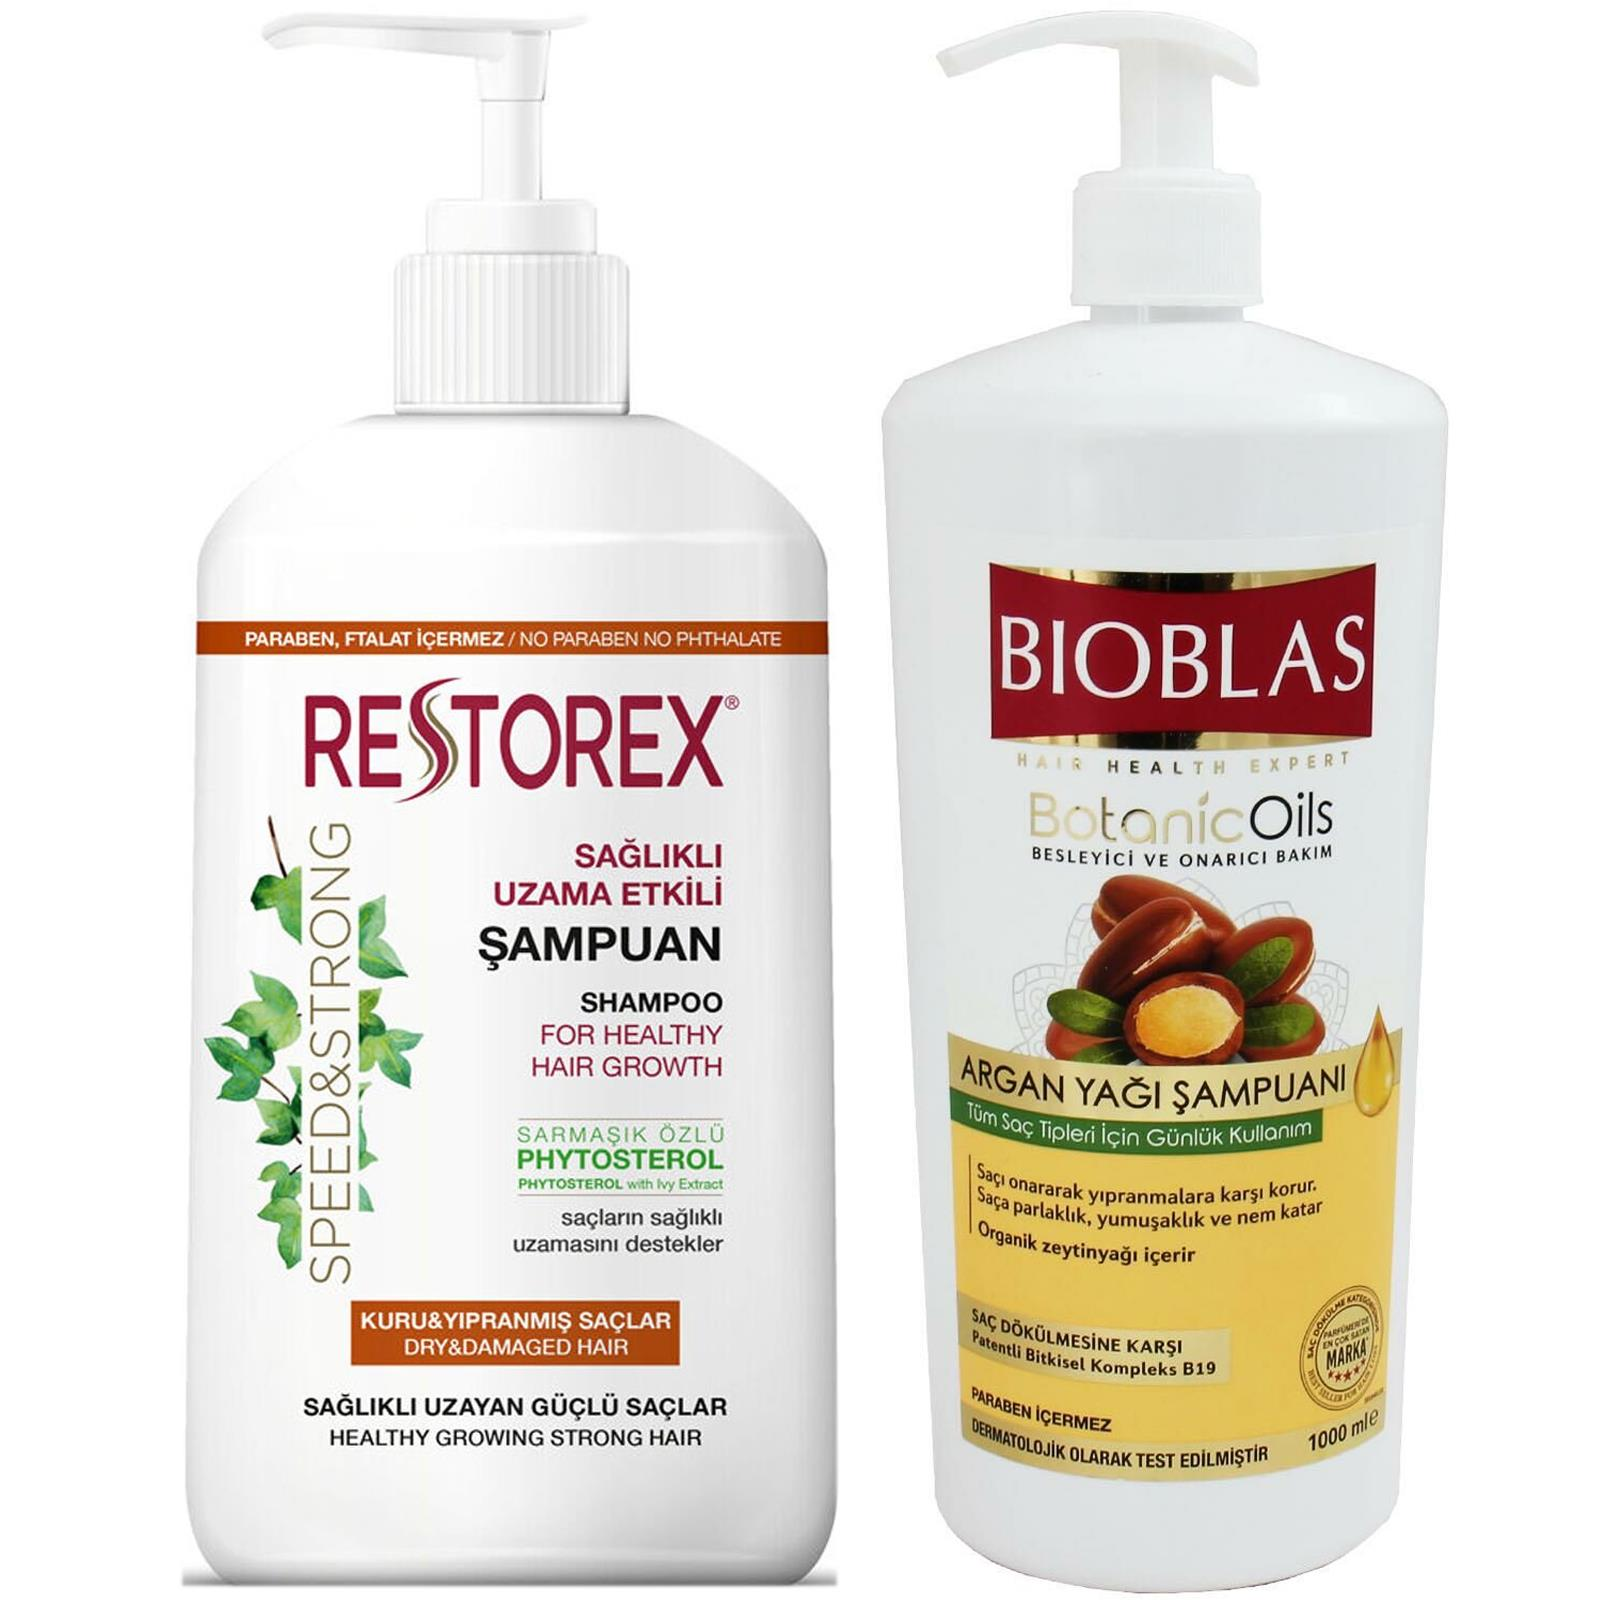 Bioblas Argan Yağı Şampuanı 1000 ml + Restorex Kuru Yıpranmış Saçlar İçin Onarıcı Şampuan 1000 ml